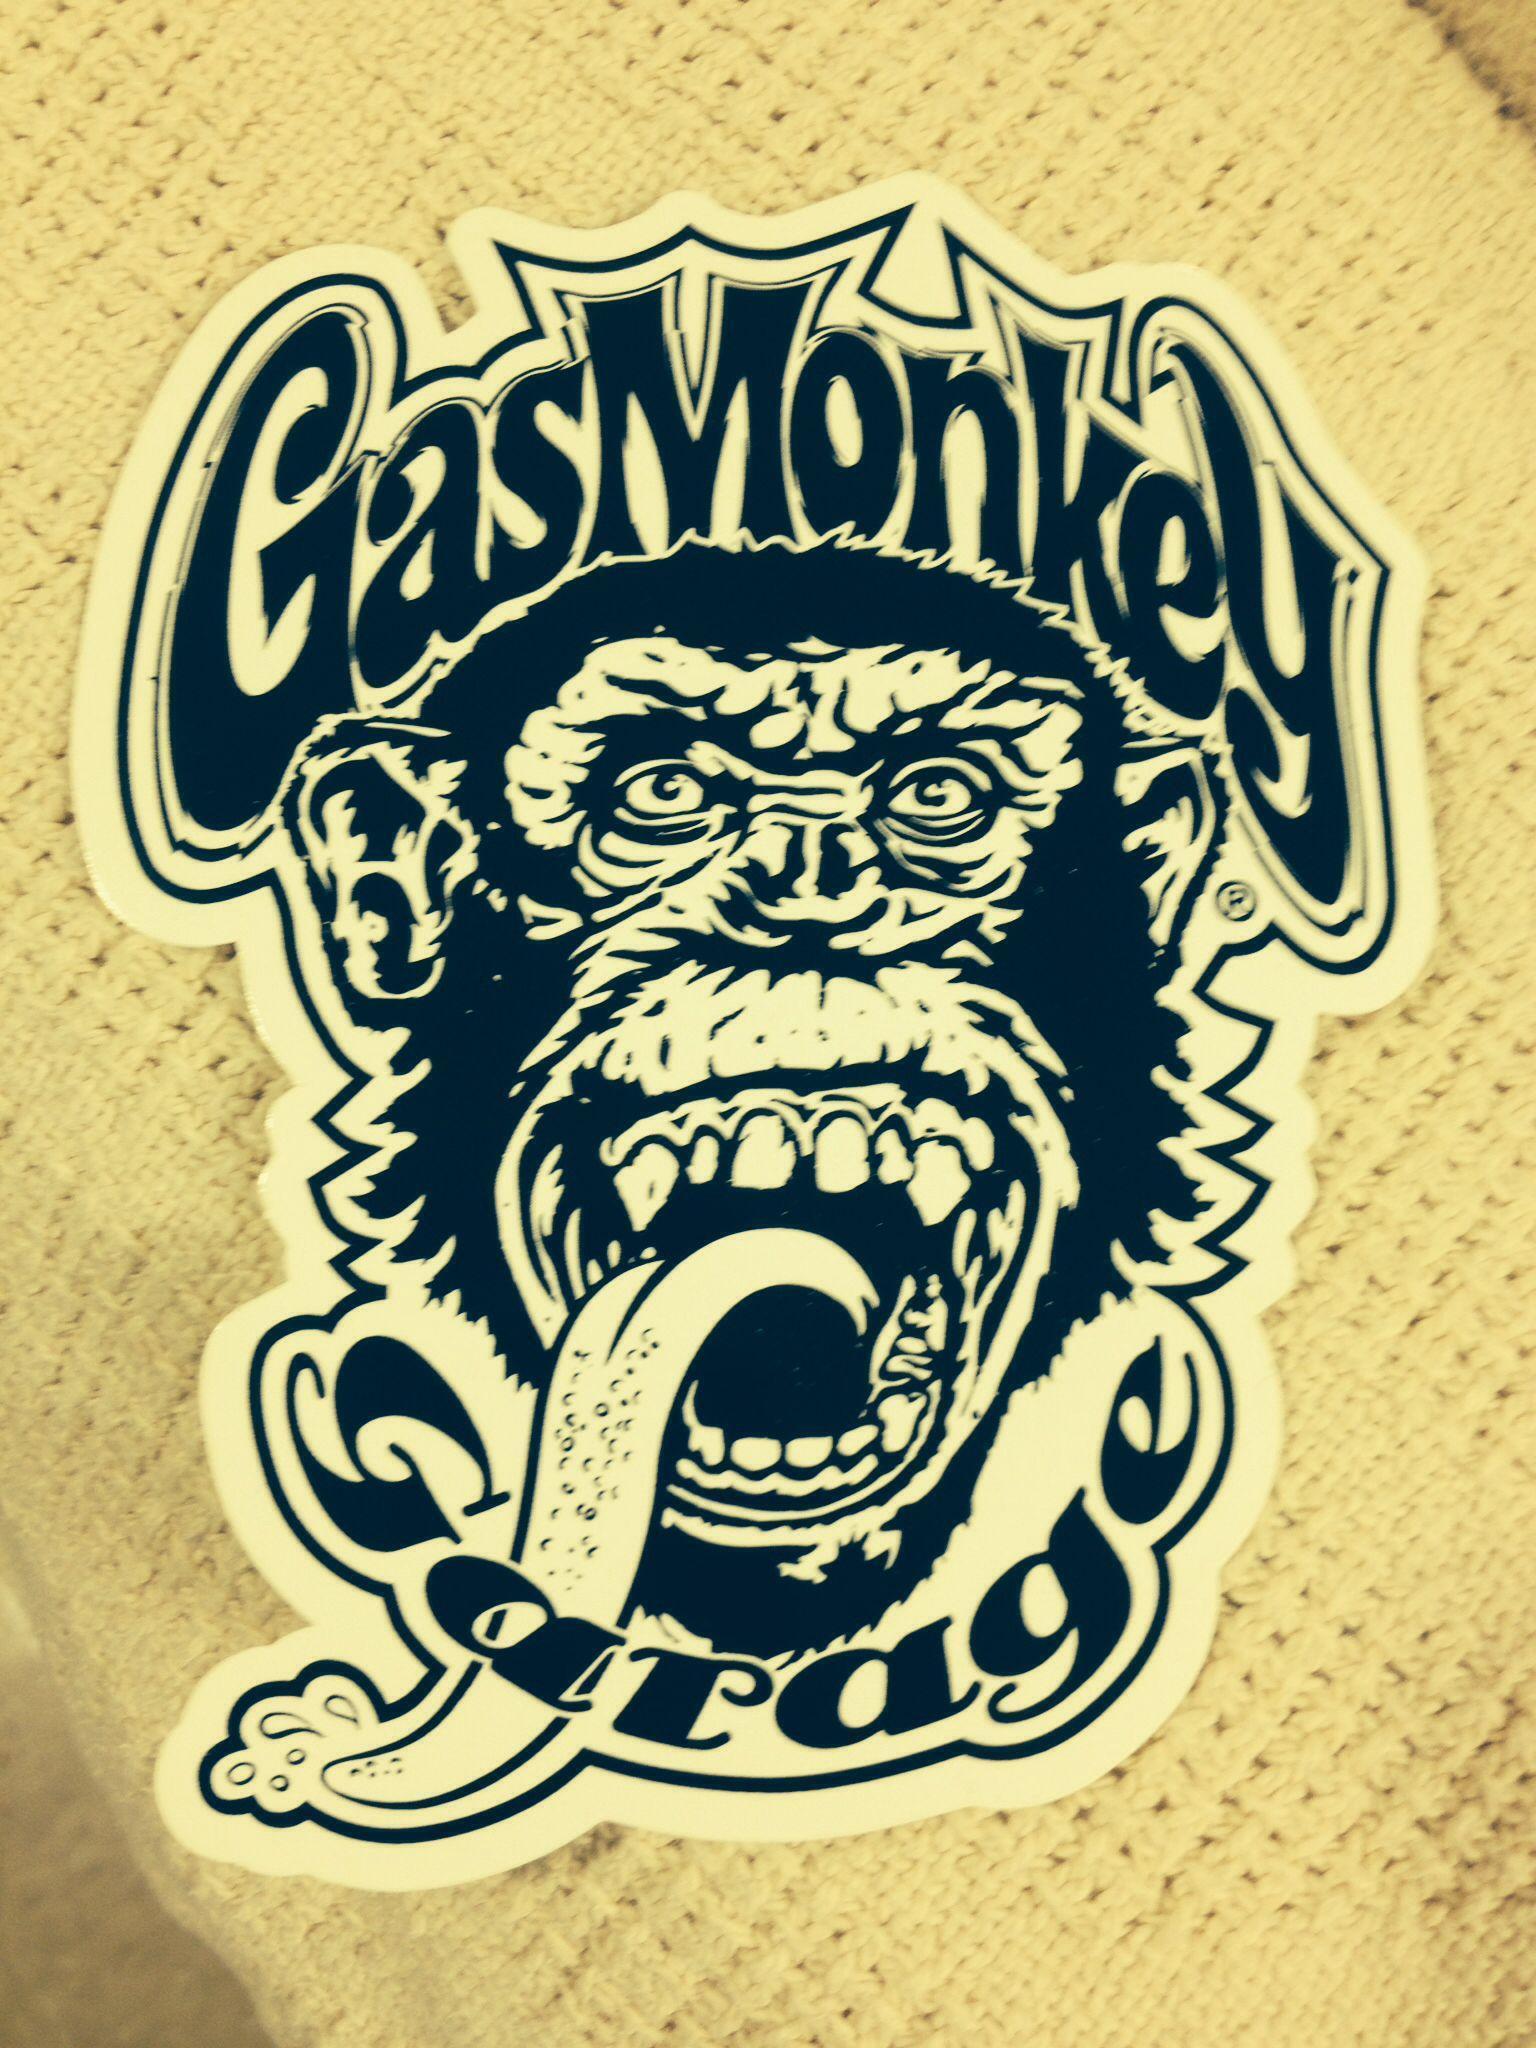 gas monkey logo. g r a p h i c 2. Gas monkey and Monkey